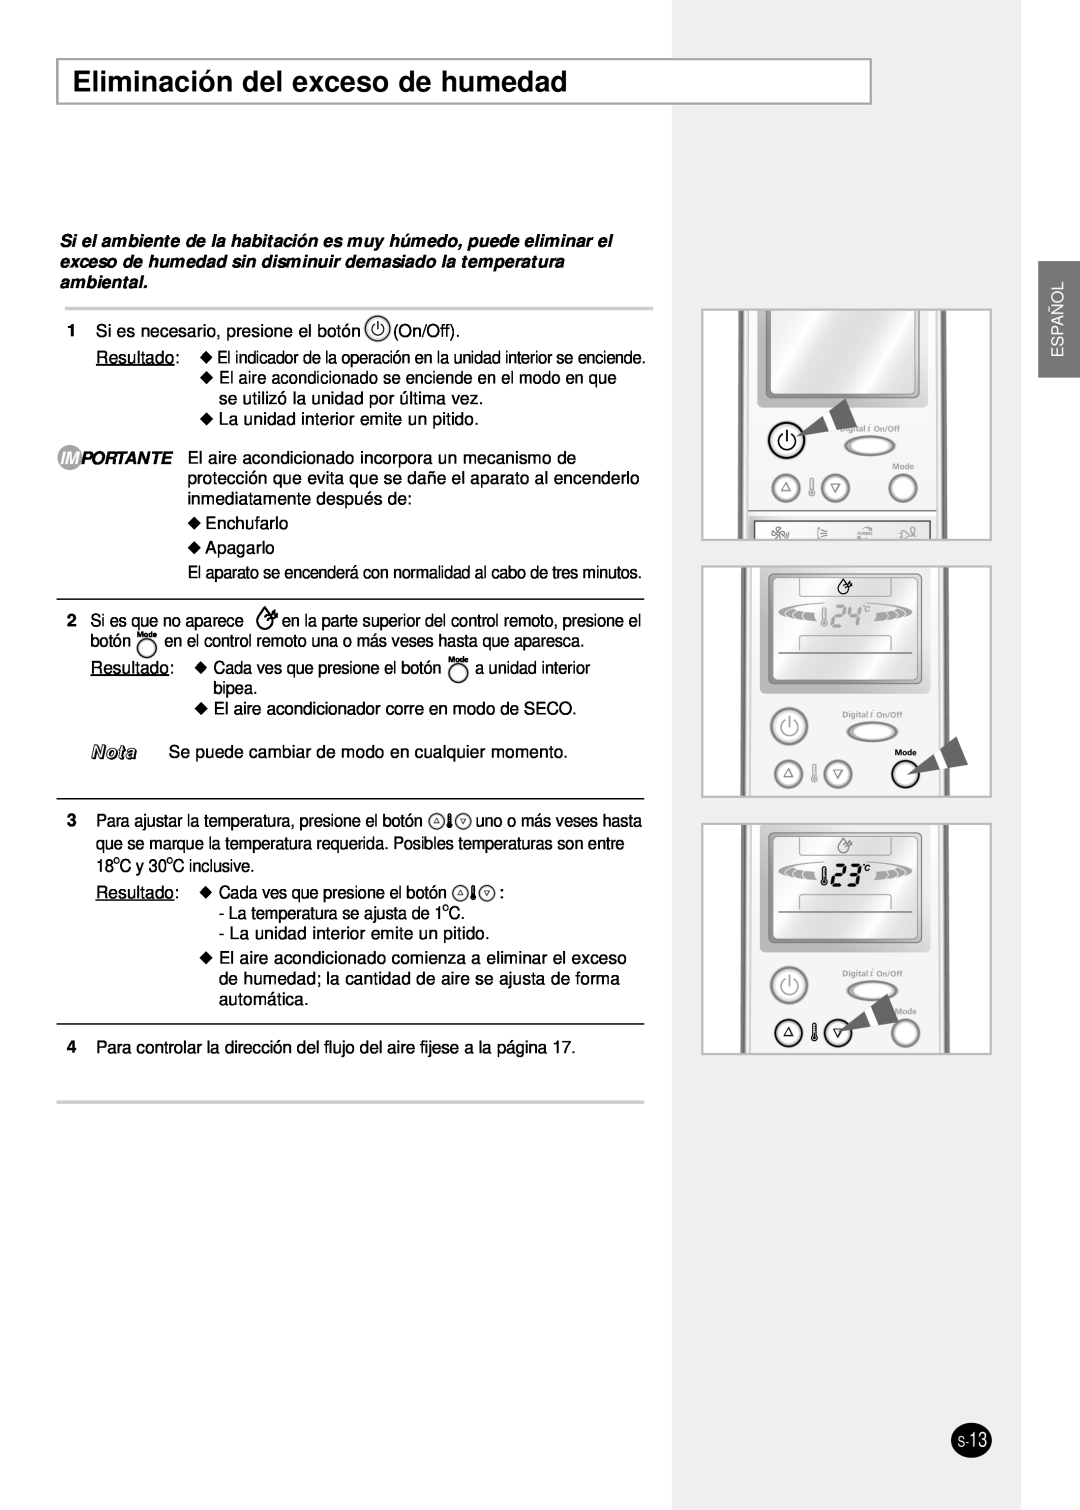 Samsung SH24TP6 manual Eliminación del exceso de humedad, Español, S-13 